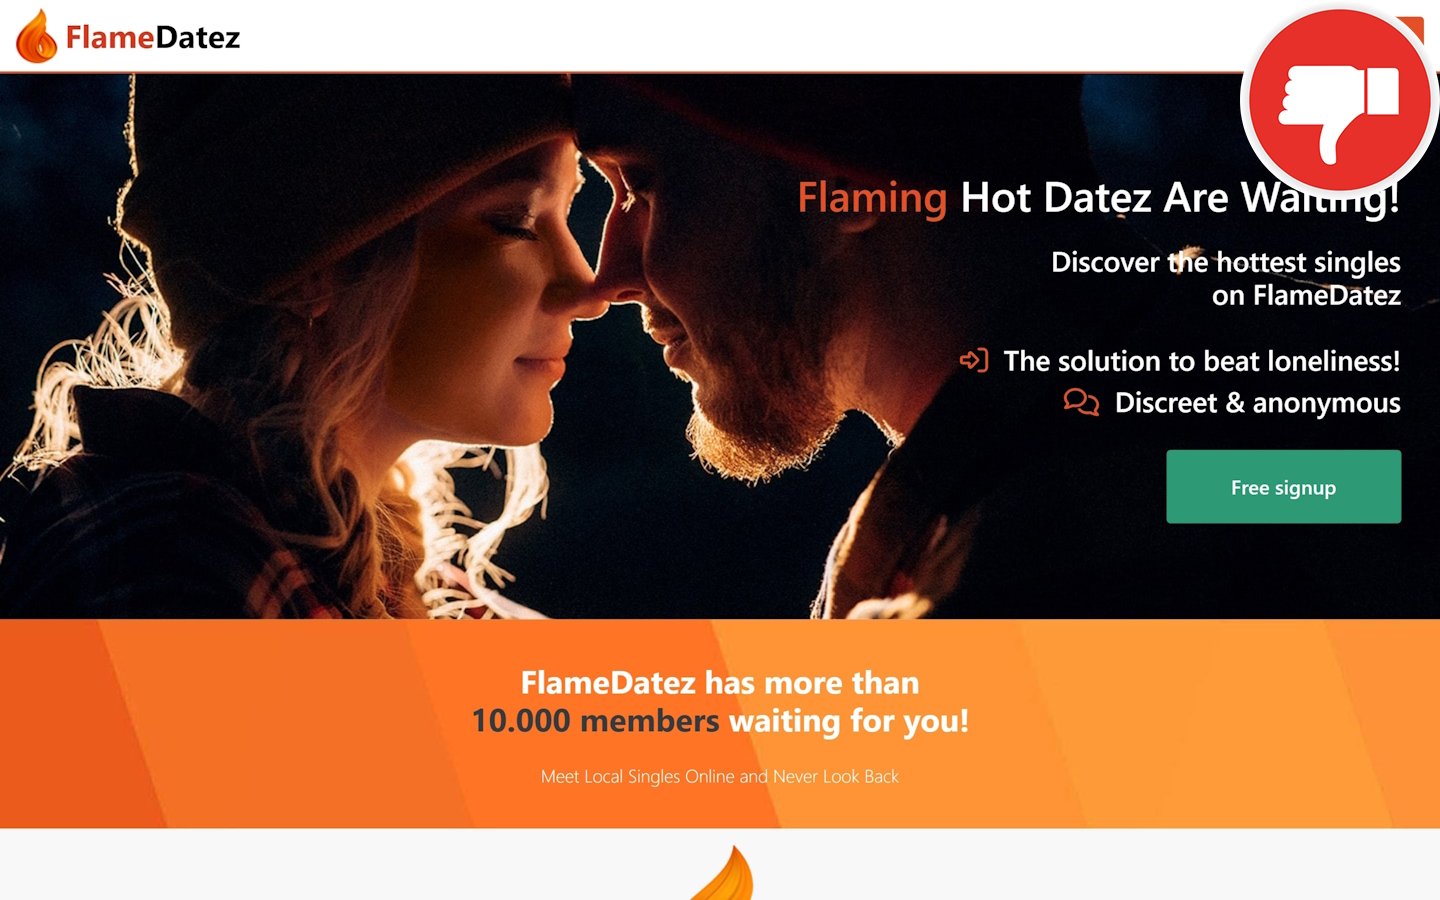 Review FlameDatez.com scam experience